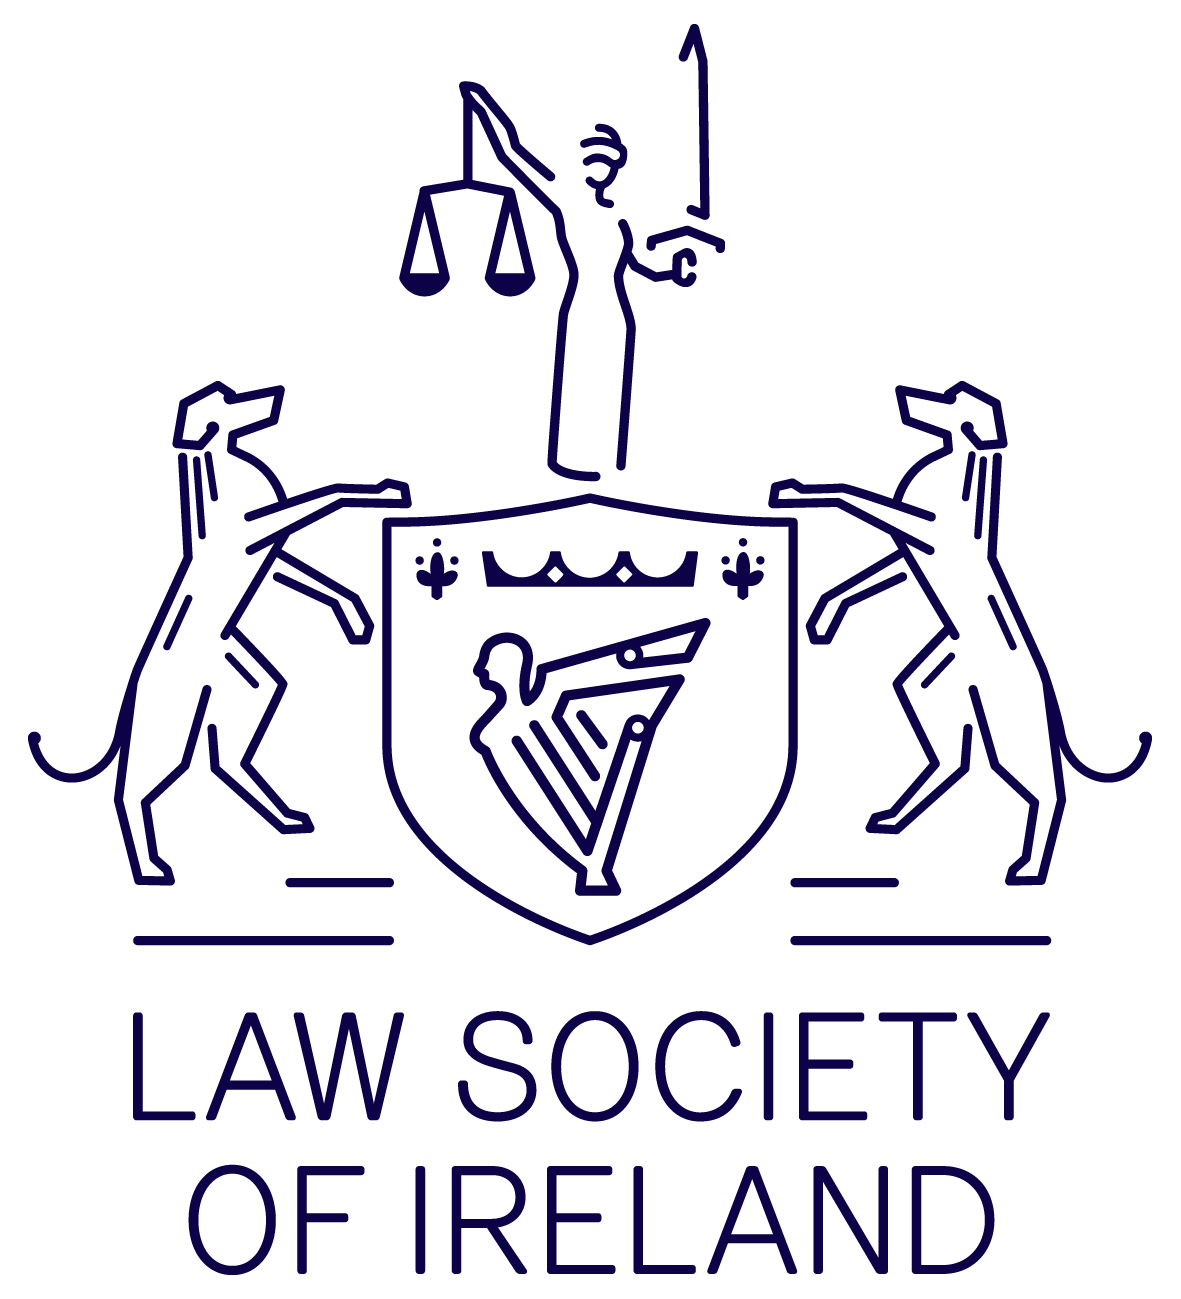 Law Society of Ireland